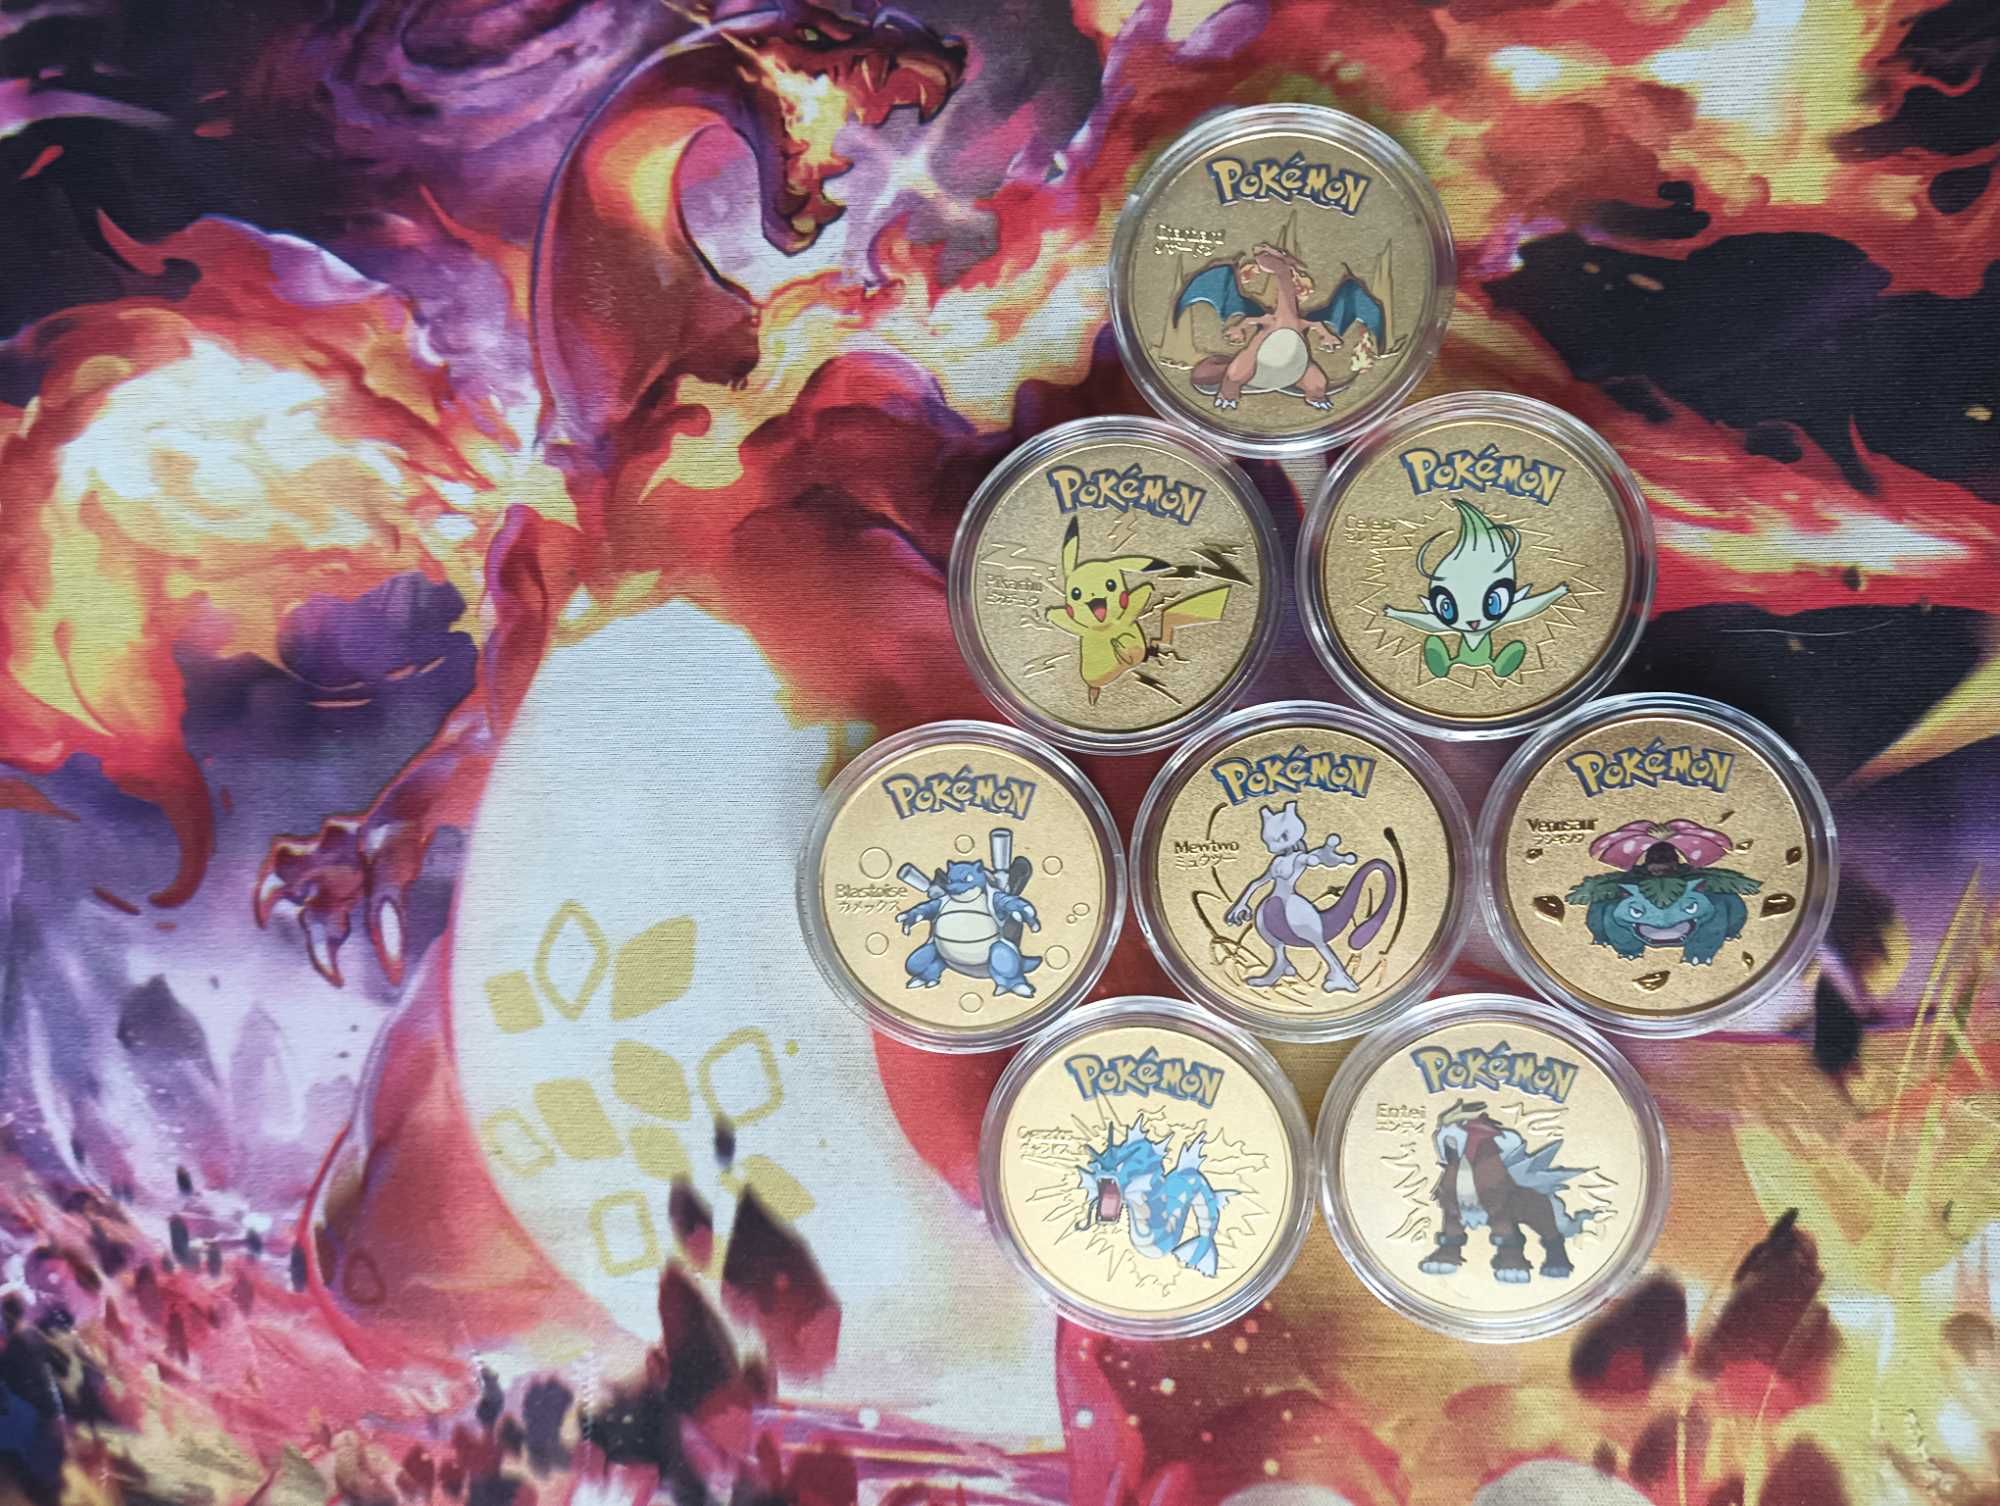 Pokemon zestaw 8 szt Charizard Pikachu monety w kapslach